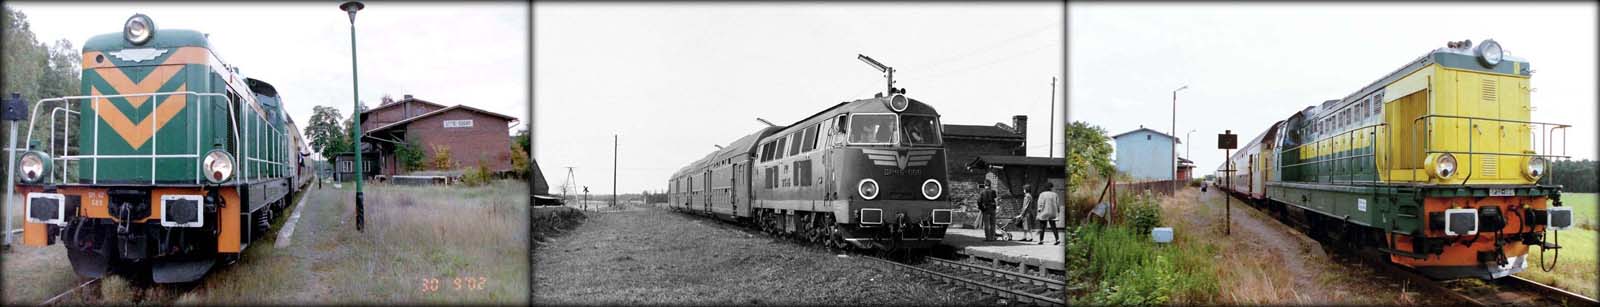 Od lewej: SM42-689 w Suchym Lutolu (30.09.2002), SP45-096 w Dąbrówce Wlkp (maj 1987). SP32-088 na stacji Chociszewo – Rogoziniec w dniu 19.05.2002.